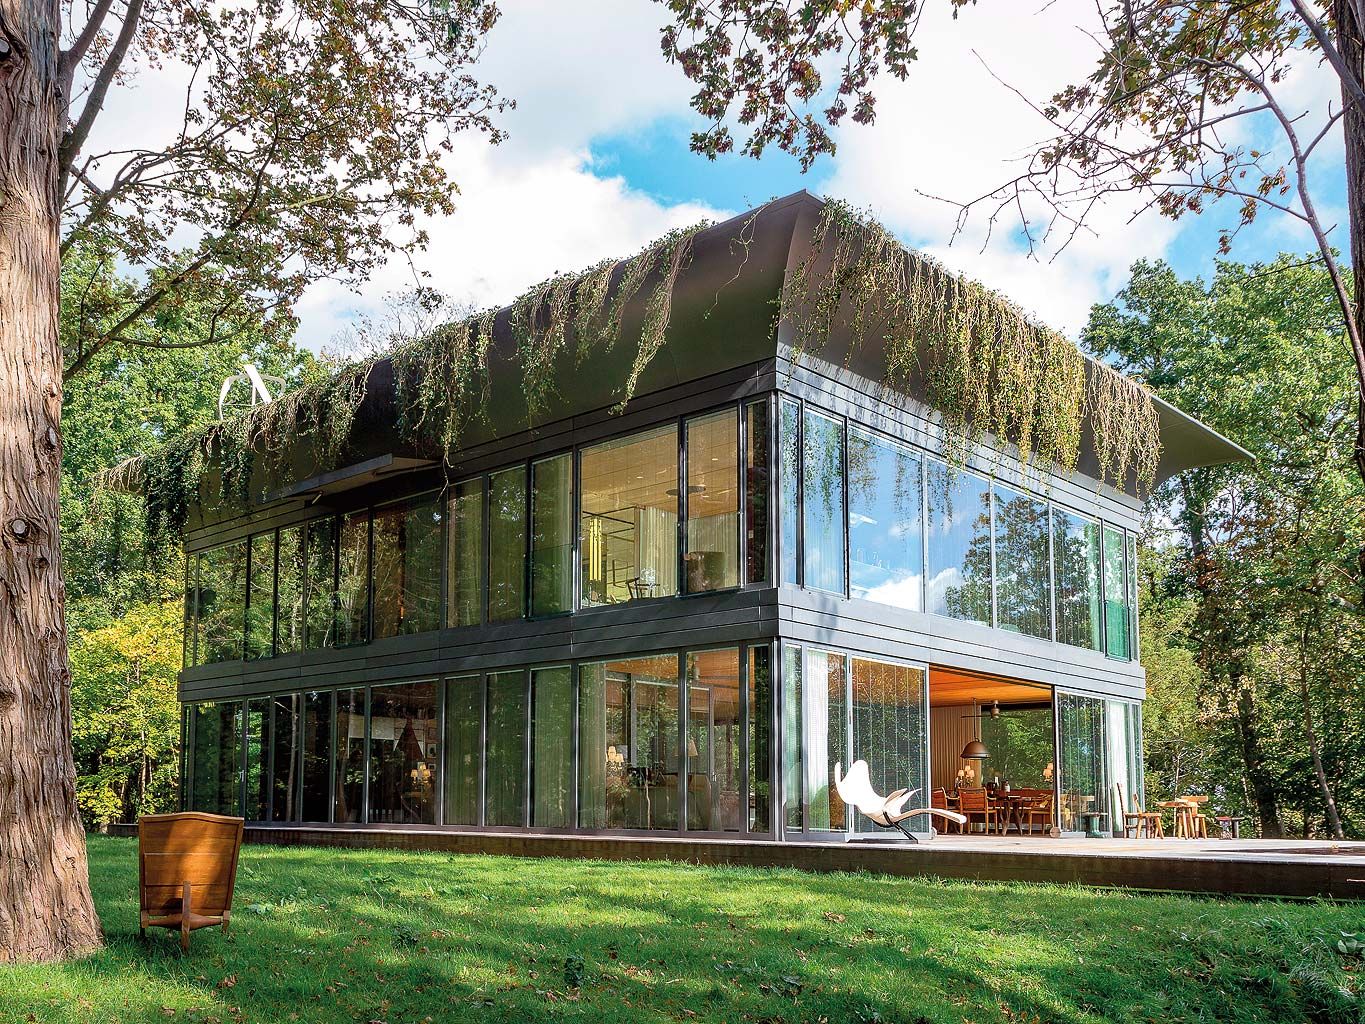 La casa prefabricada y móvil perfecta para vivir en la naturaleza